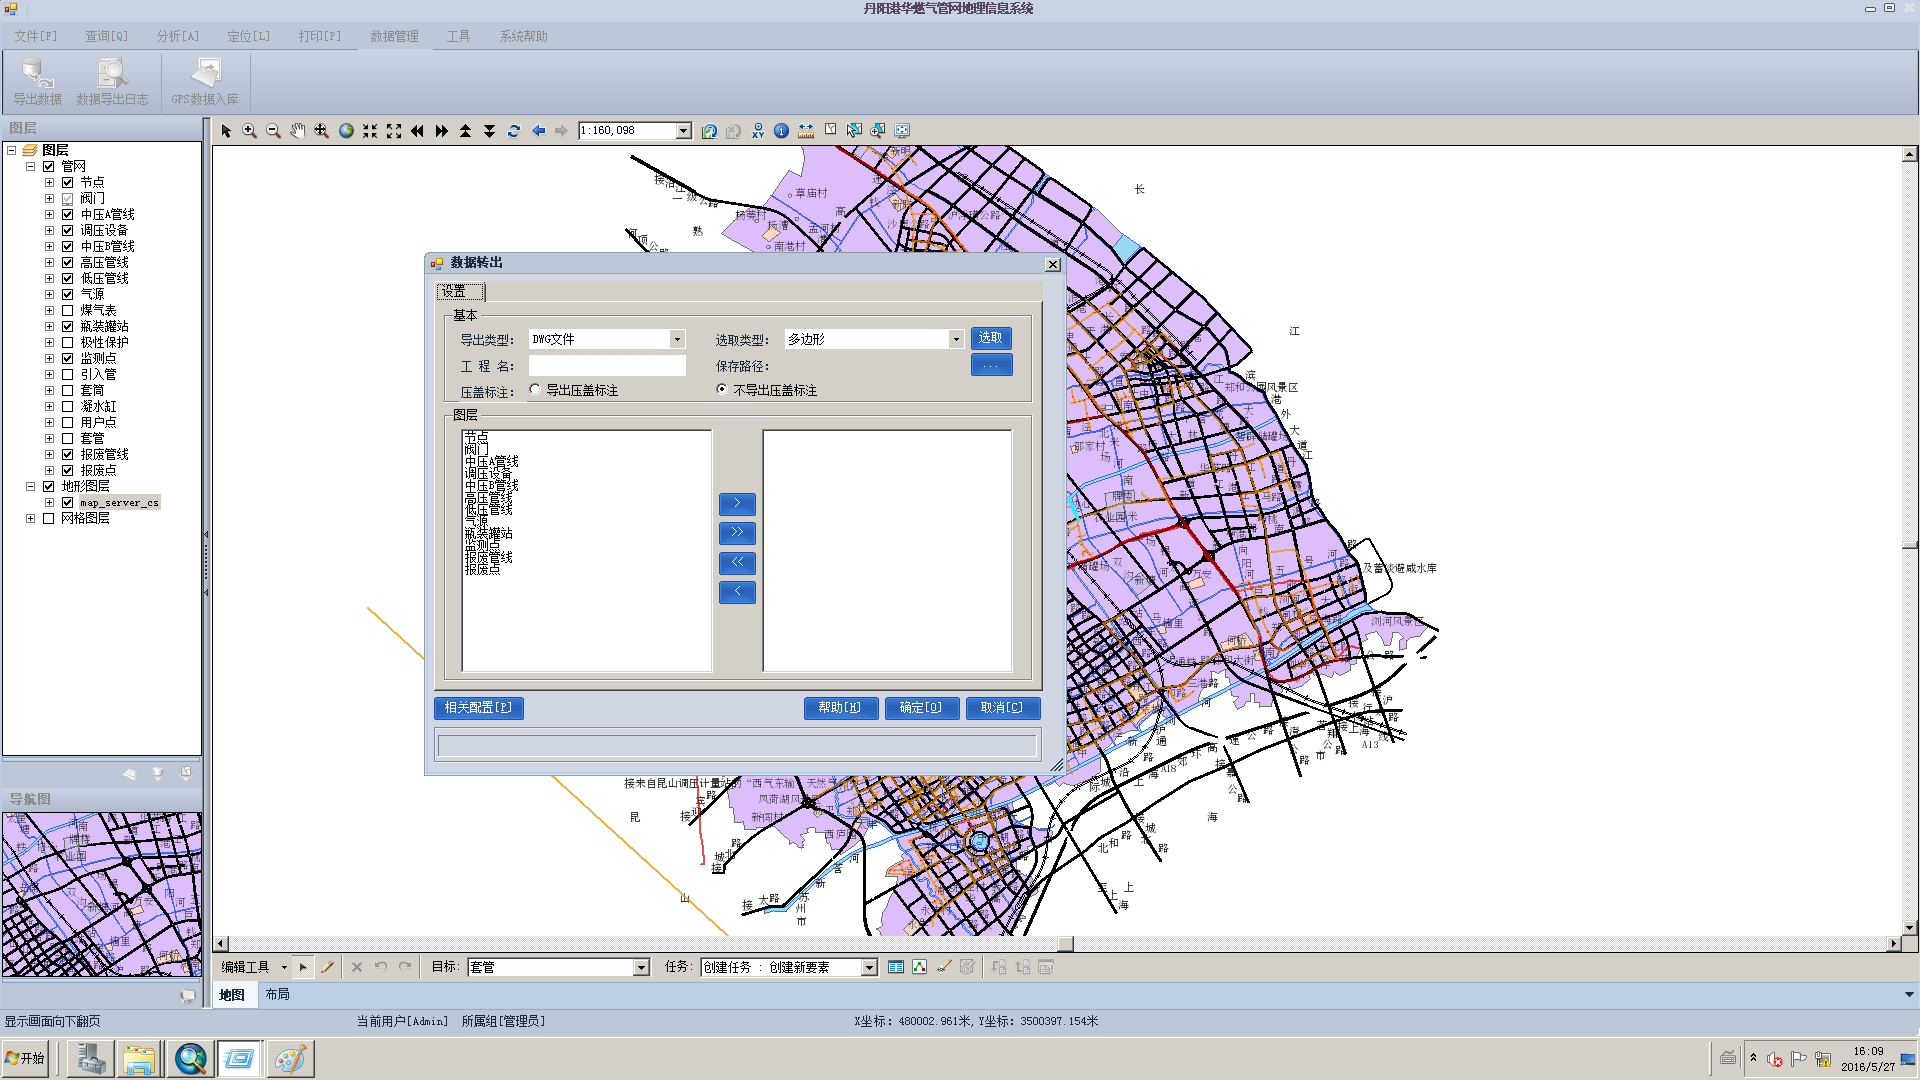 城市管网地理信息管理系统（GIS）